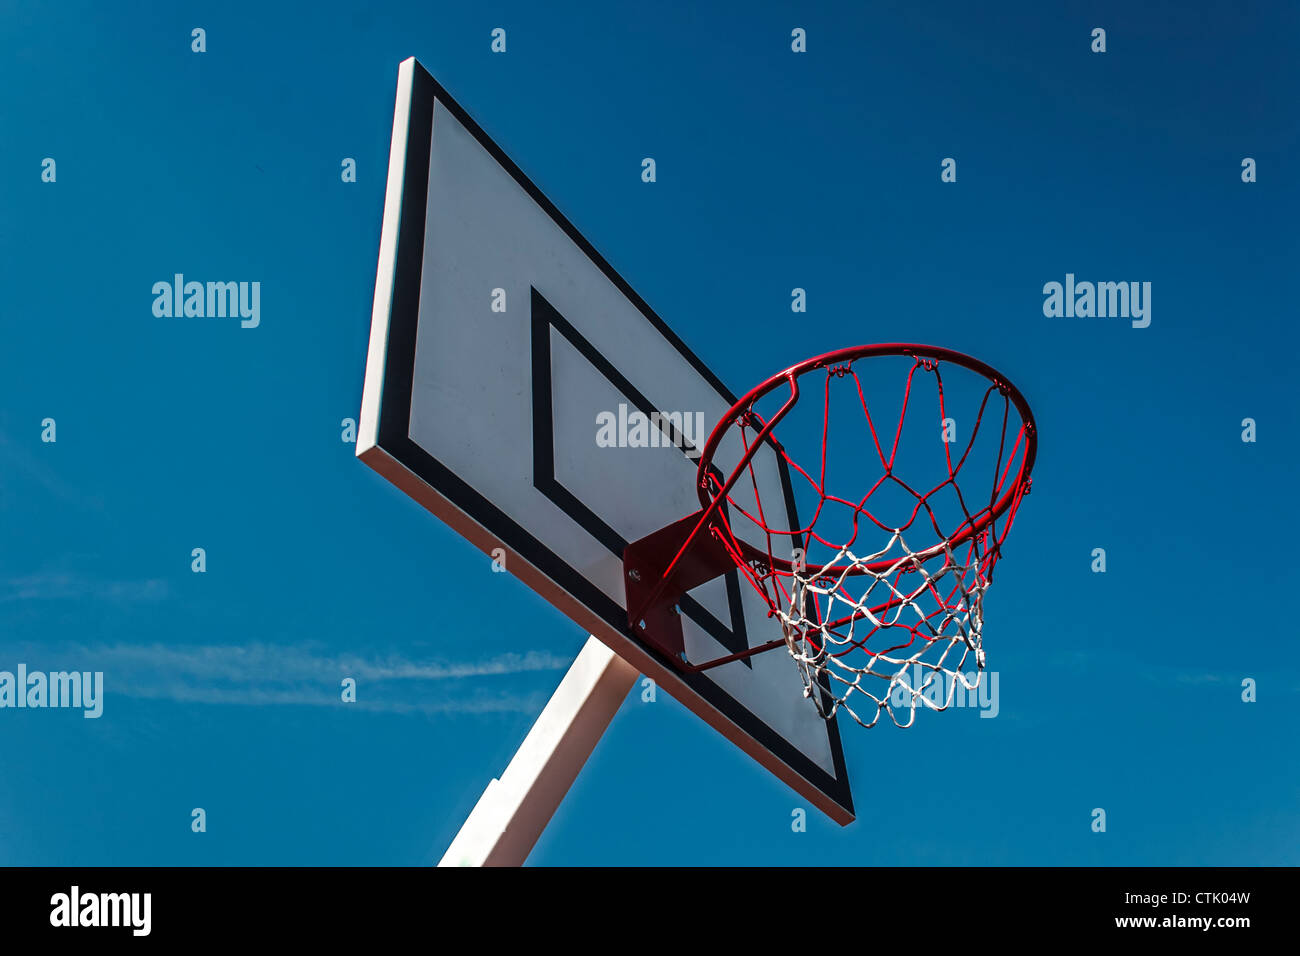 Panneau de basket-ball sous un ciel bleu Banque D'Images